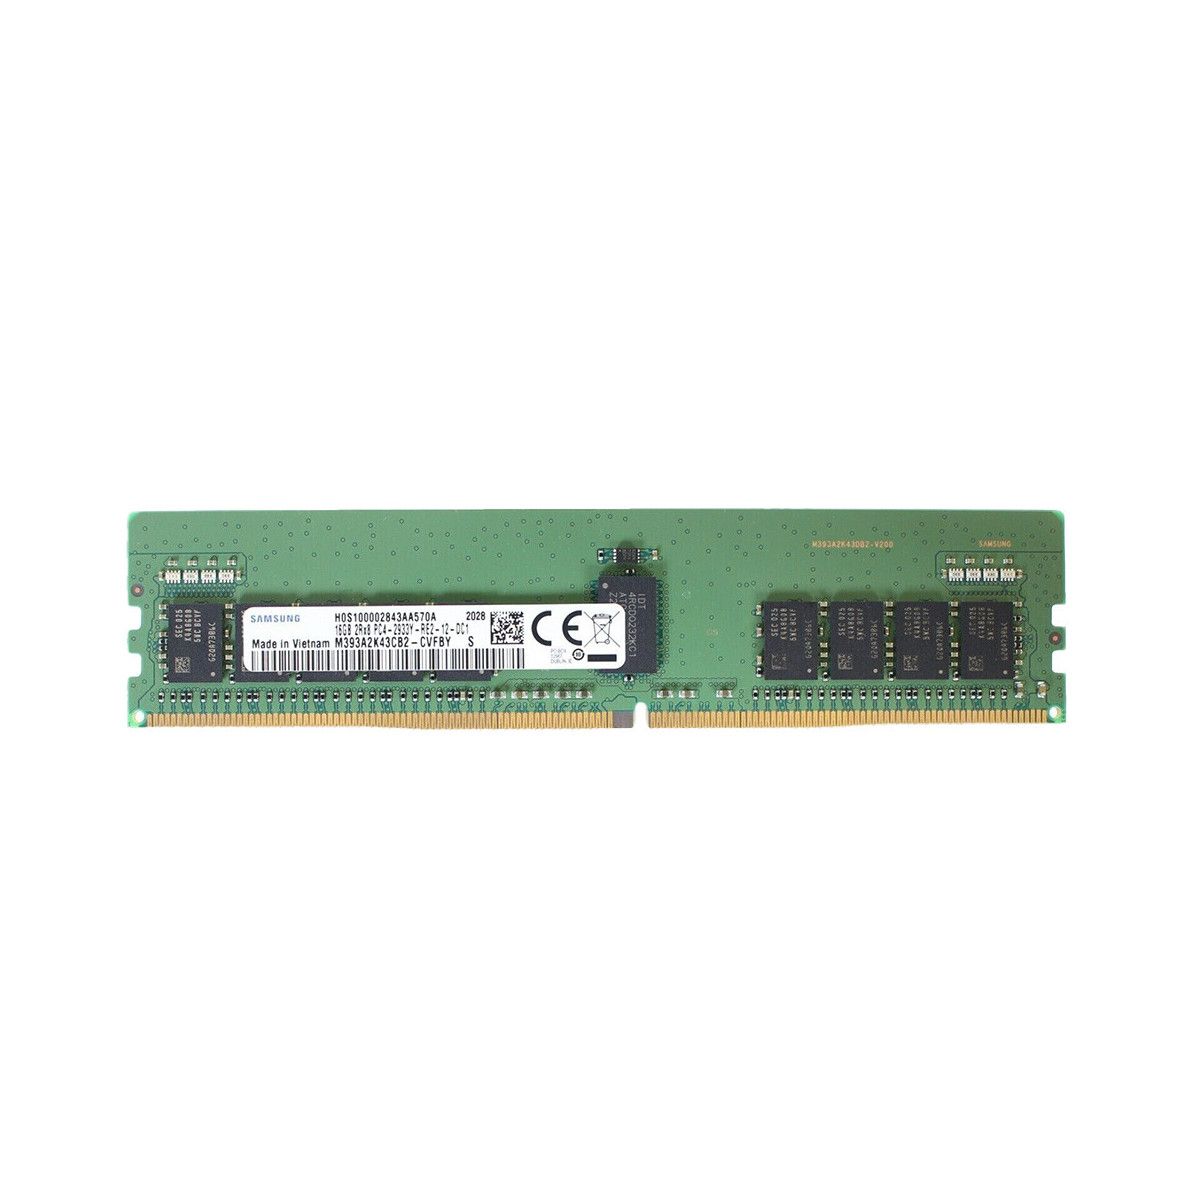 4ZC7A08741-MS -JA- Memstar 1x 16GB DDR4-2933 RDIMM PC4-23466U-R